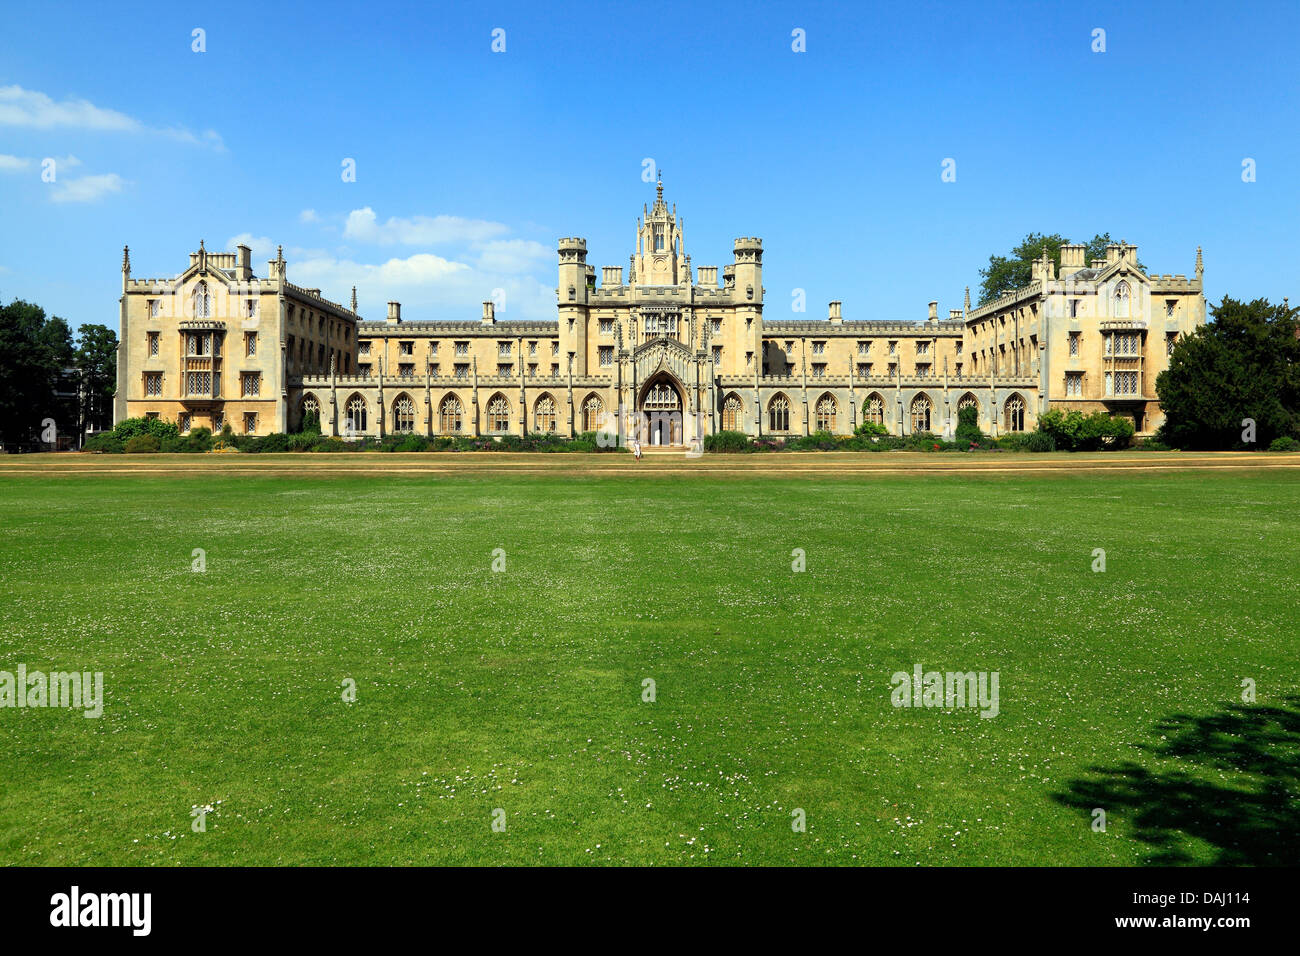 Saint John's College, Cambridge, Angleterre, Royaume-Uni Université universités collèges anglais Banque D'Images